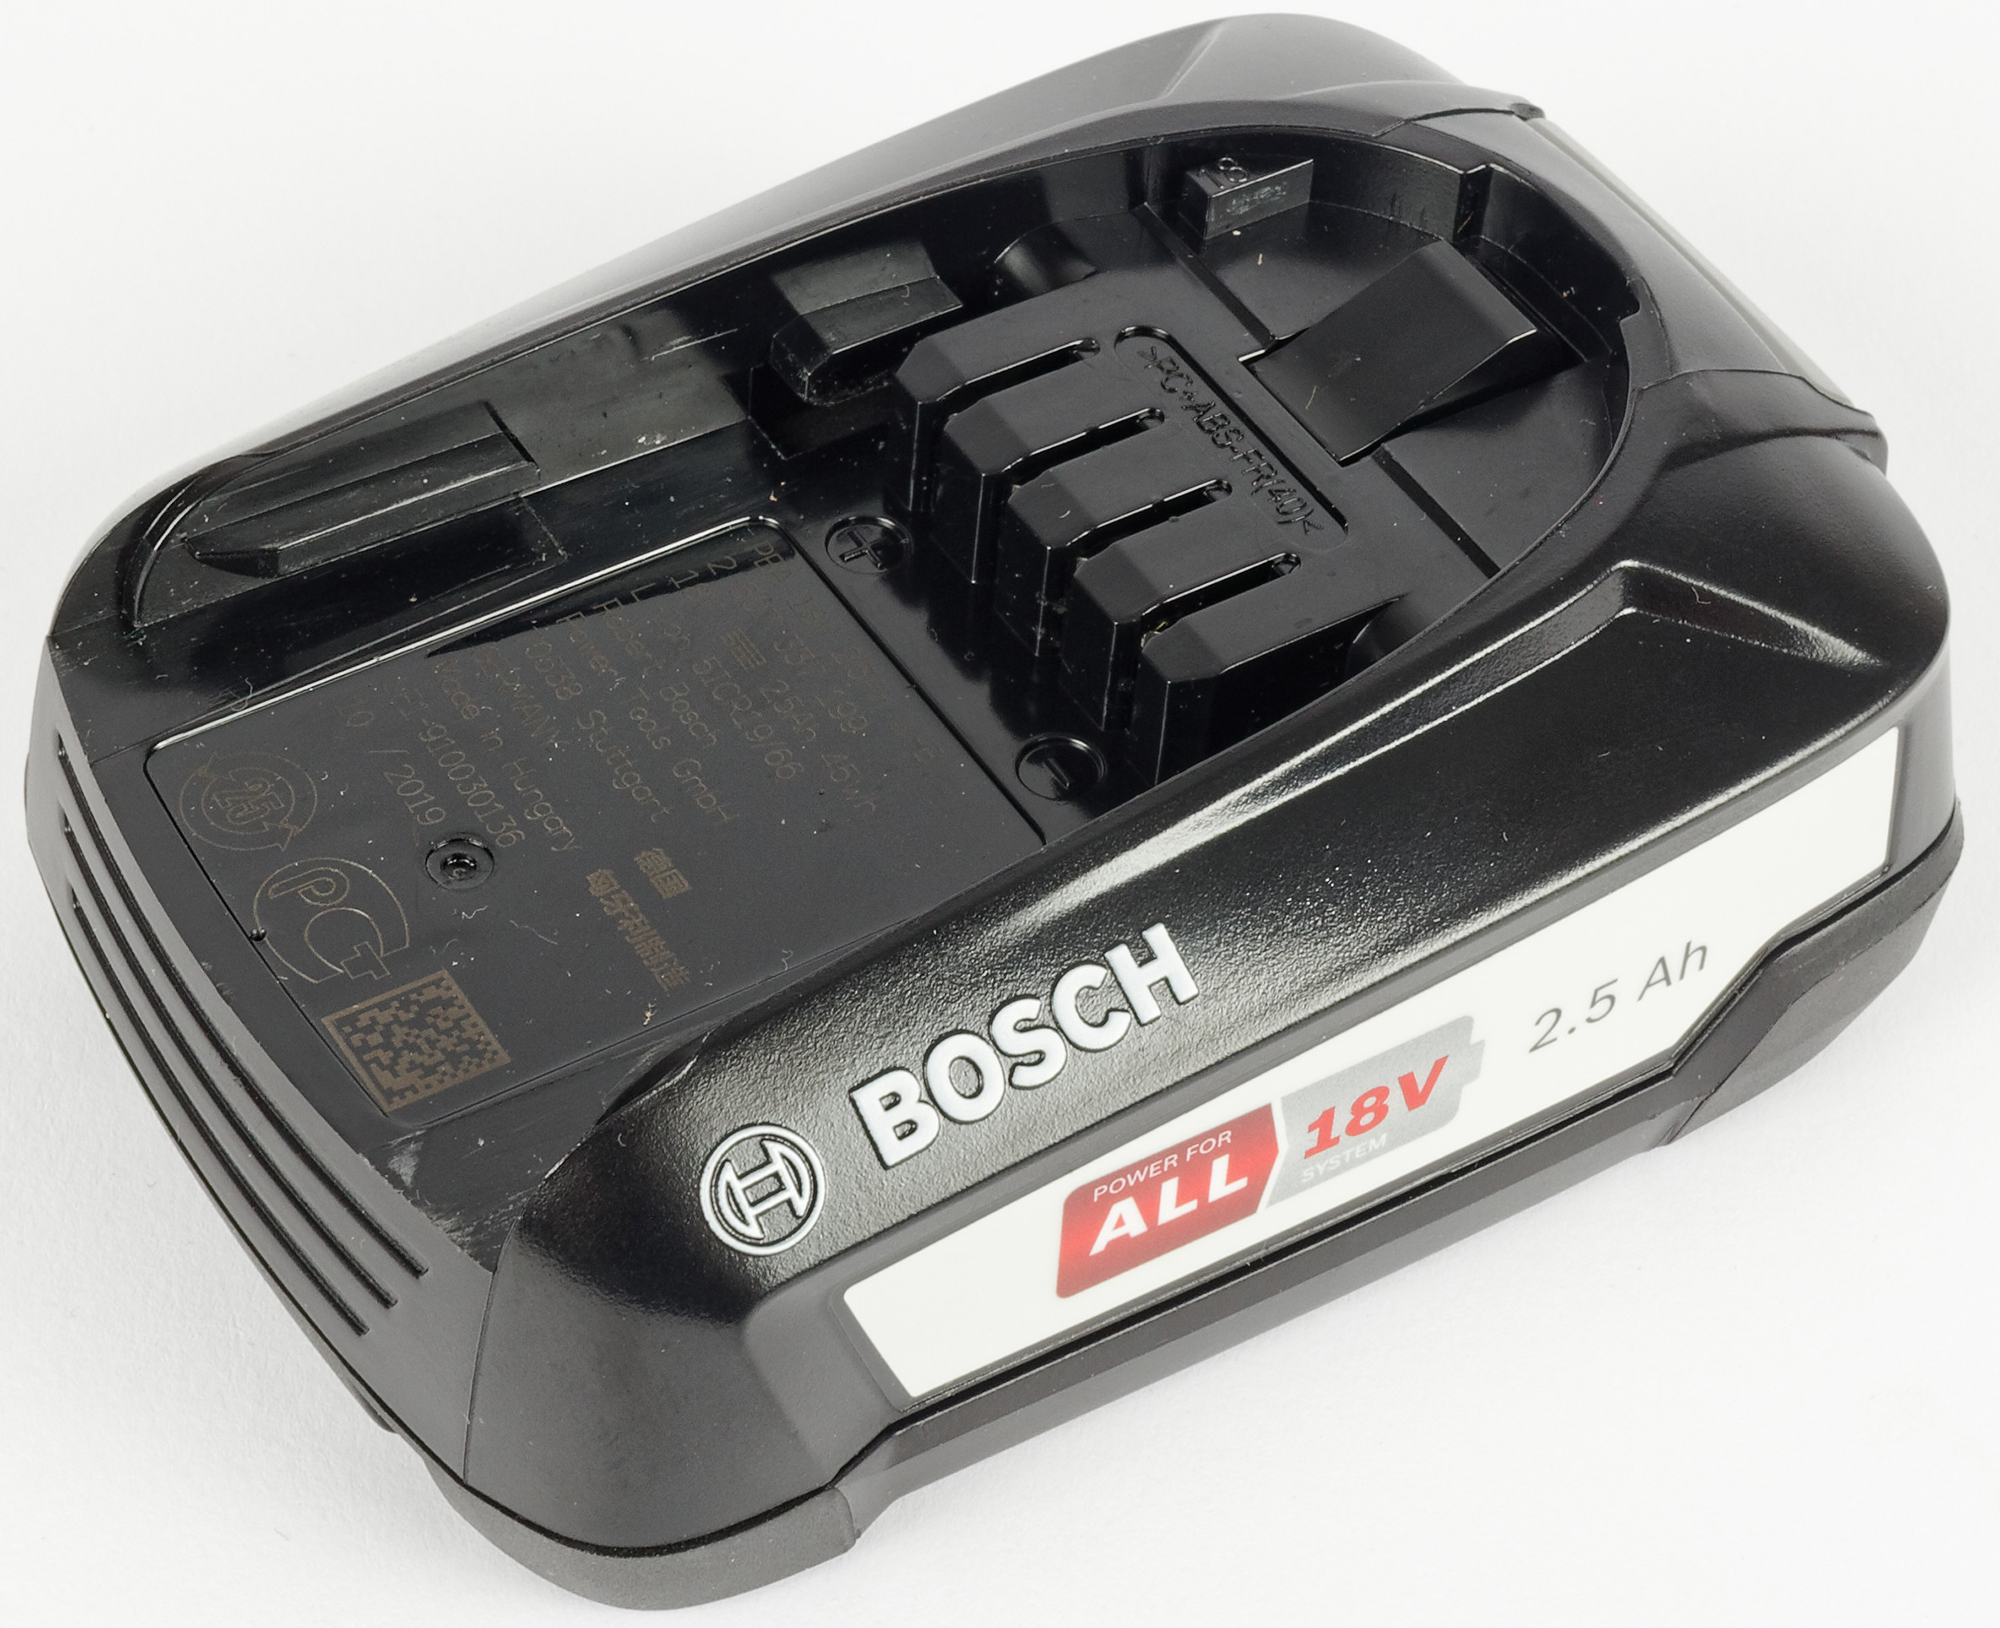 Купить аккумулятор для пылесоса бош. Bosch bcs611p4a. Аккумулятор для пылесоса Bosch Unlimited serie 6. Пылесос Bosch Unlimited serie 6. Аккумулятор для пылесоса Bosch Unlimited serie 8.